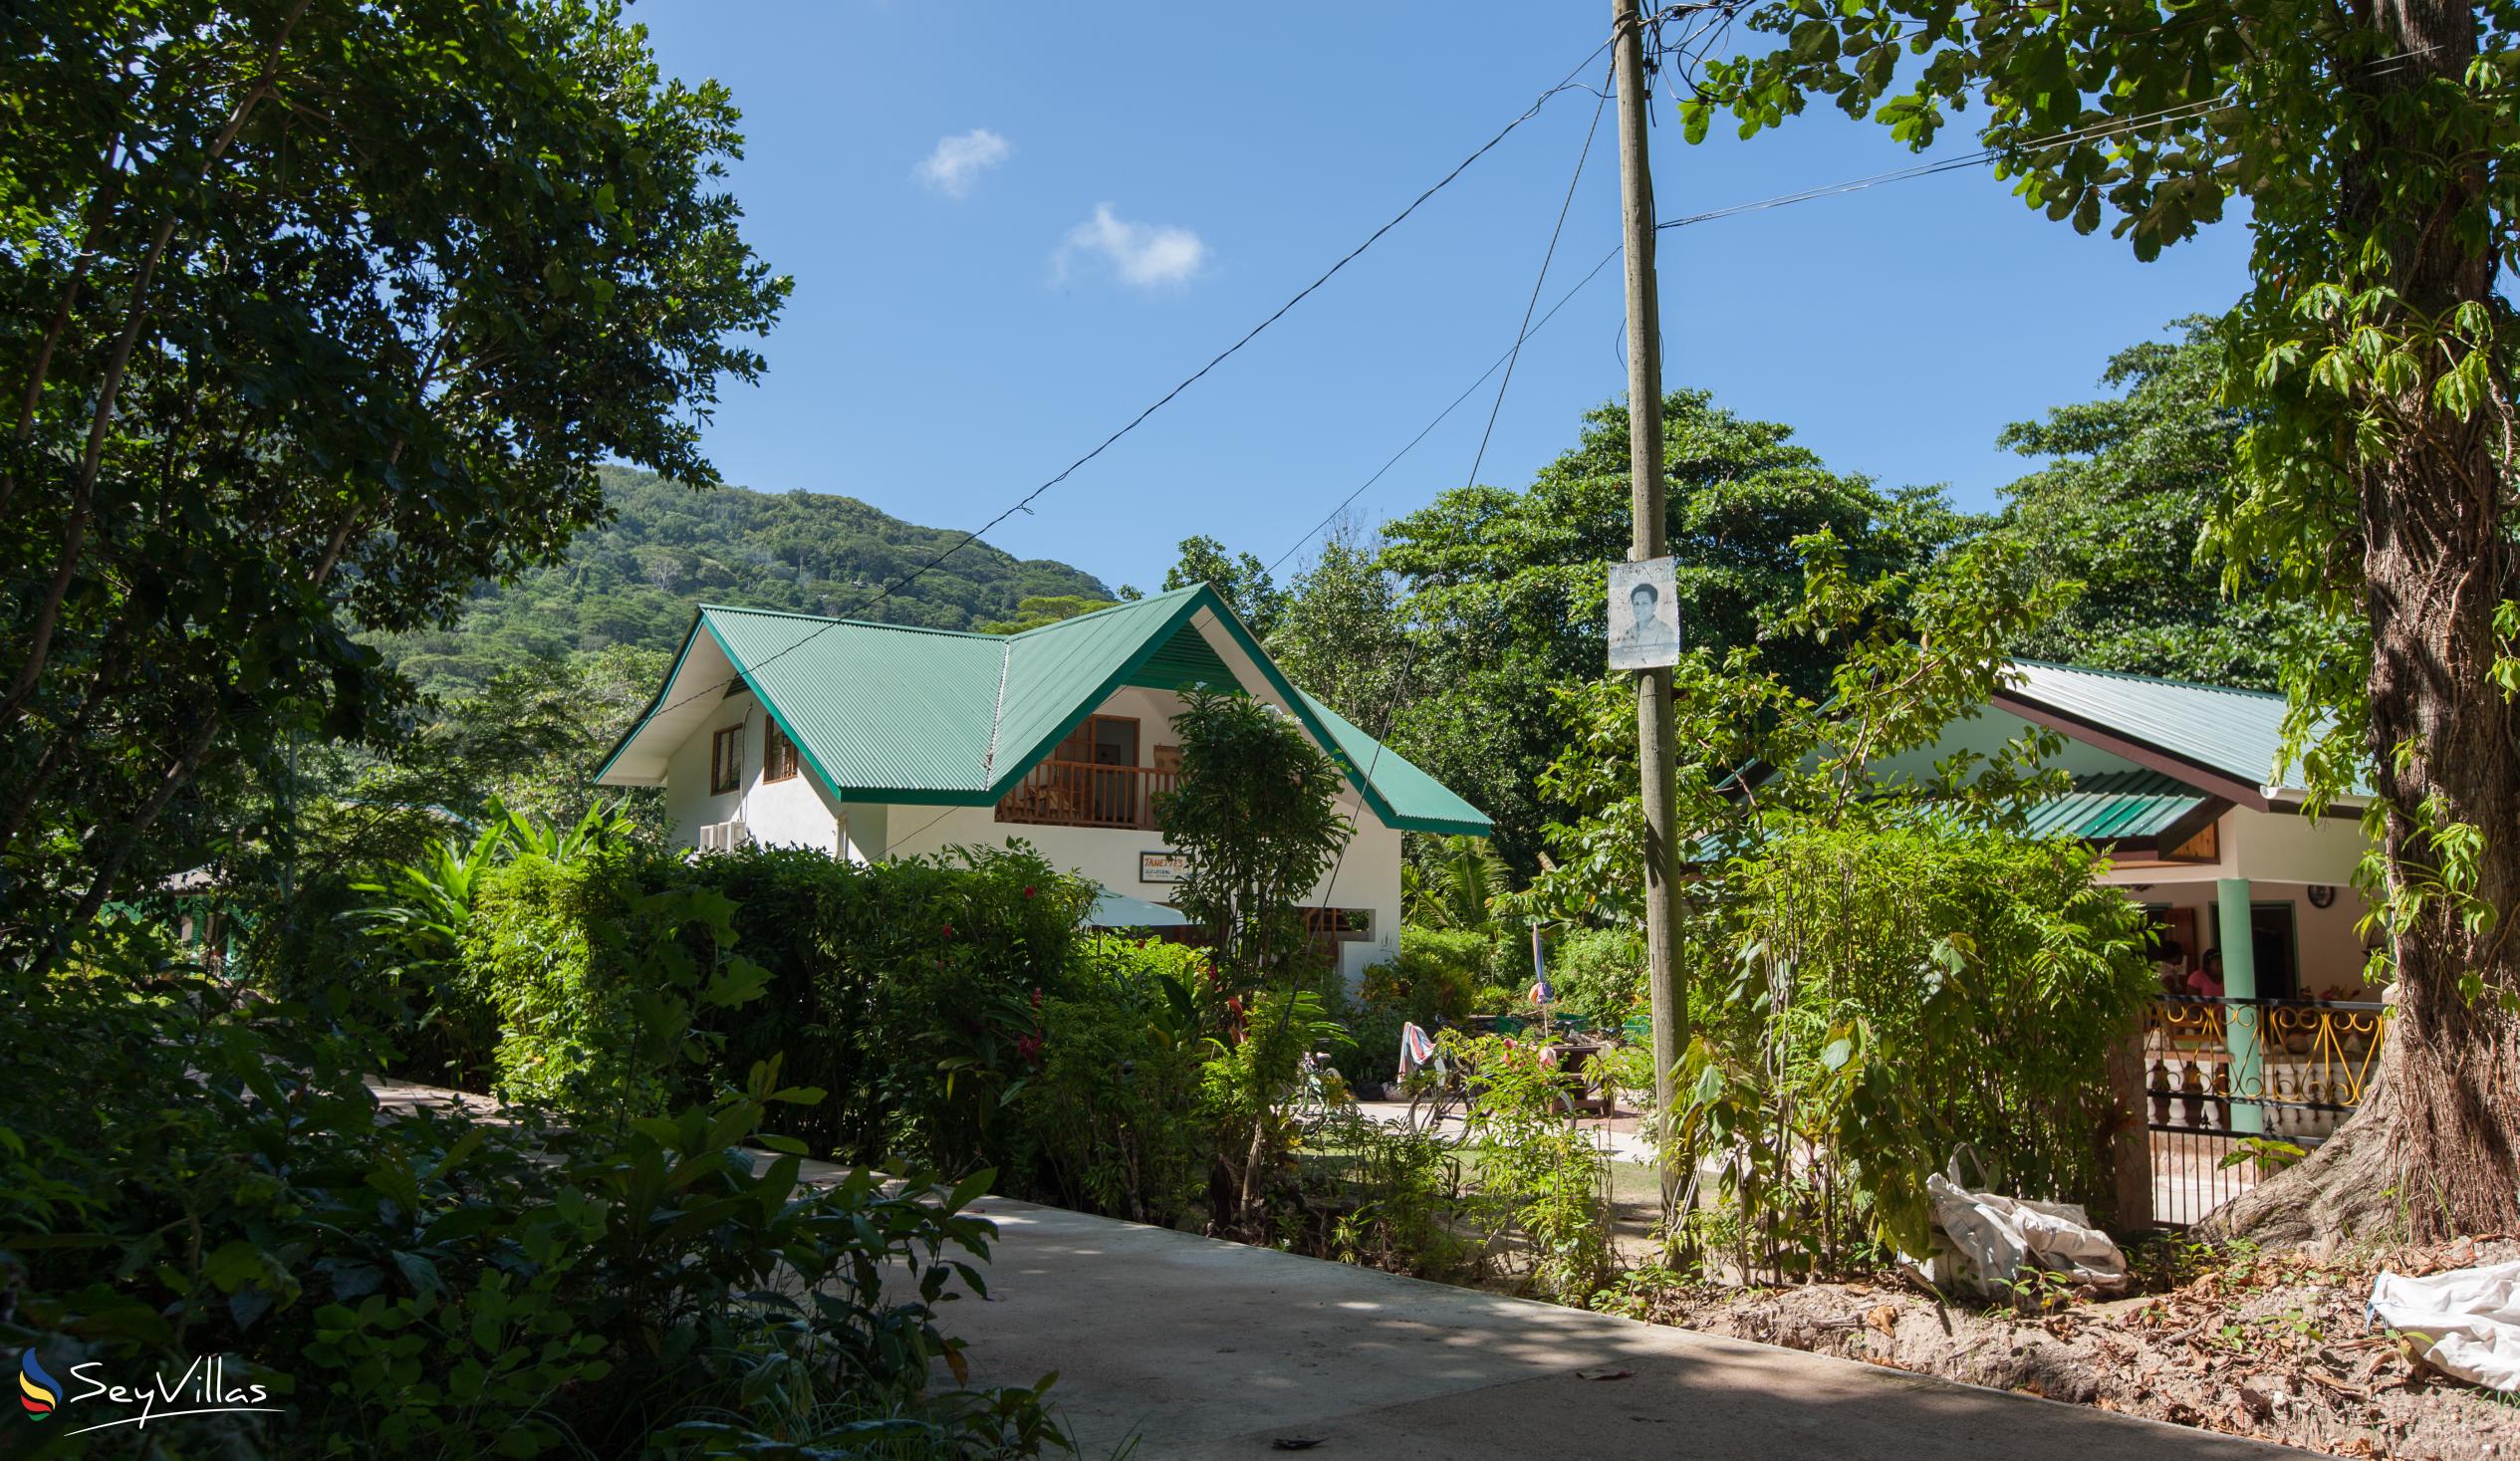 Foto 20: Tannette's Villa - Aussenbereich - La Digue (Seychellen)